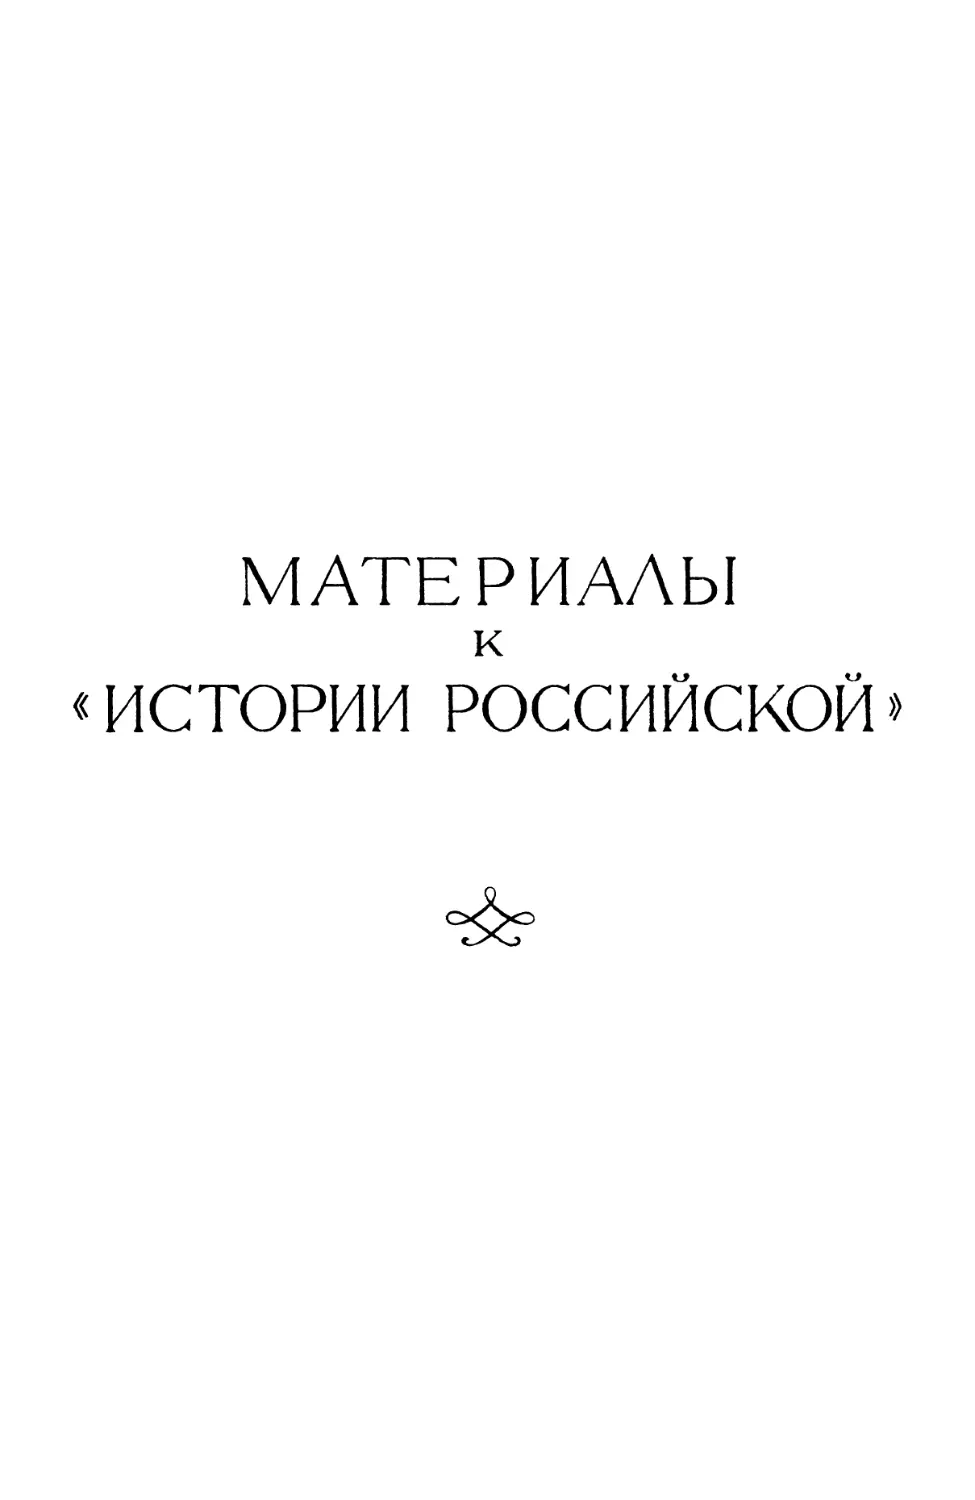 МАТЕРИАЛЫ К «ИСТОРИИ РОССИЙСКОЙ»